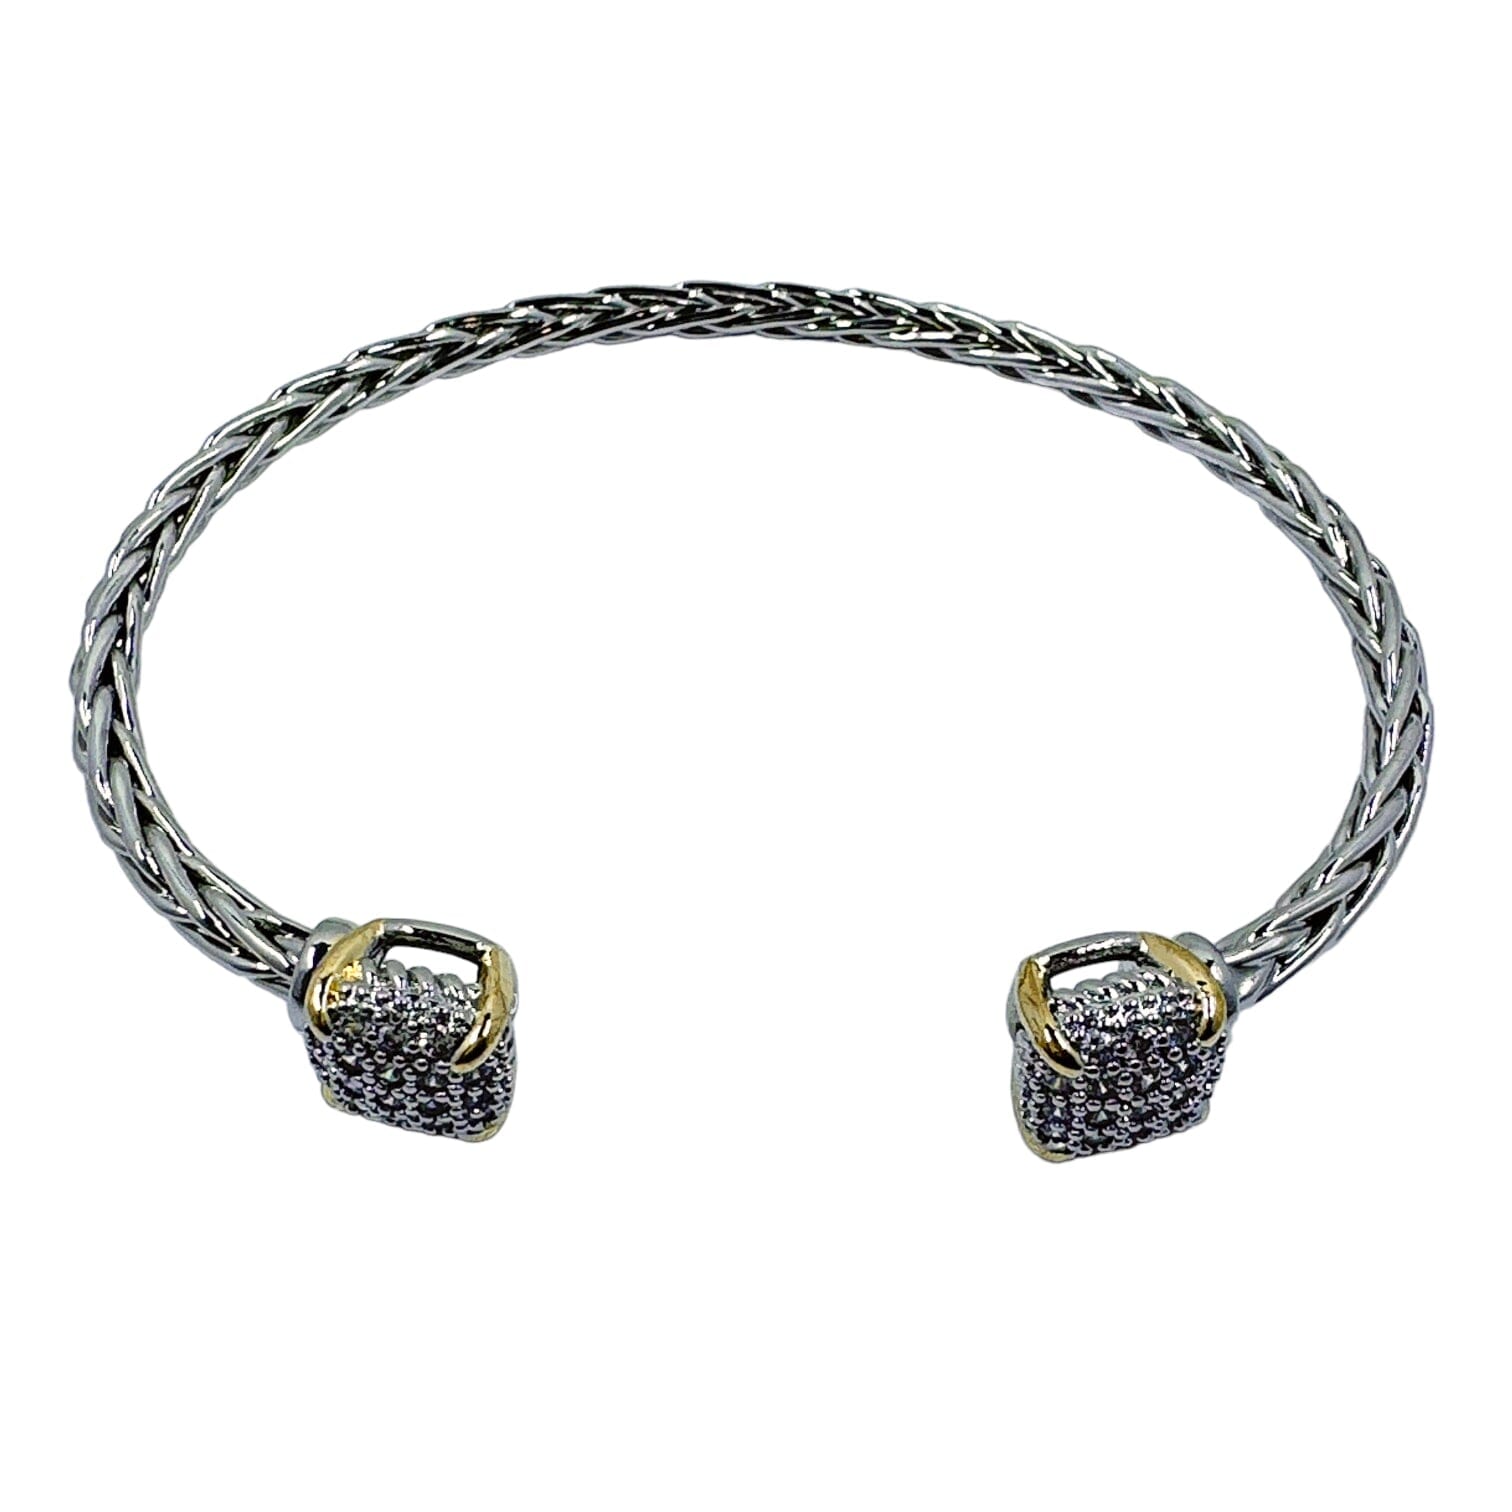 Karen Square Braid Cable Bracelet Bracelets TRENDZIO Silver 